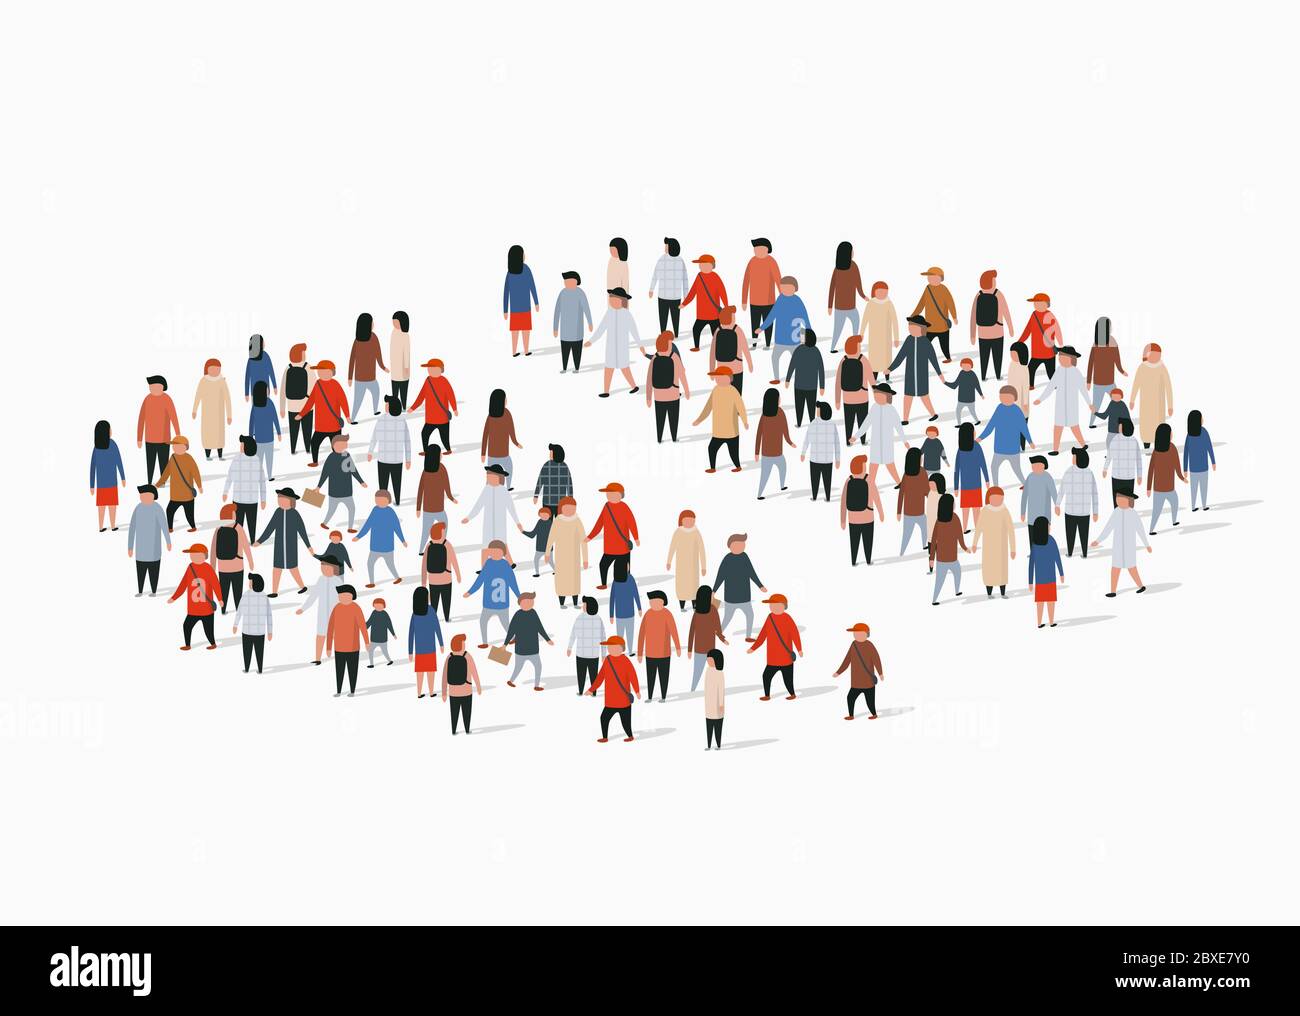 Rapport démographique de la population, graphique circulaire composé de personnes. Groupe séparé. Illustration vectorielle Illustration de Vecteur